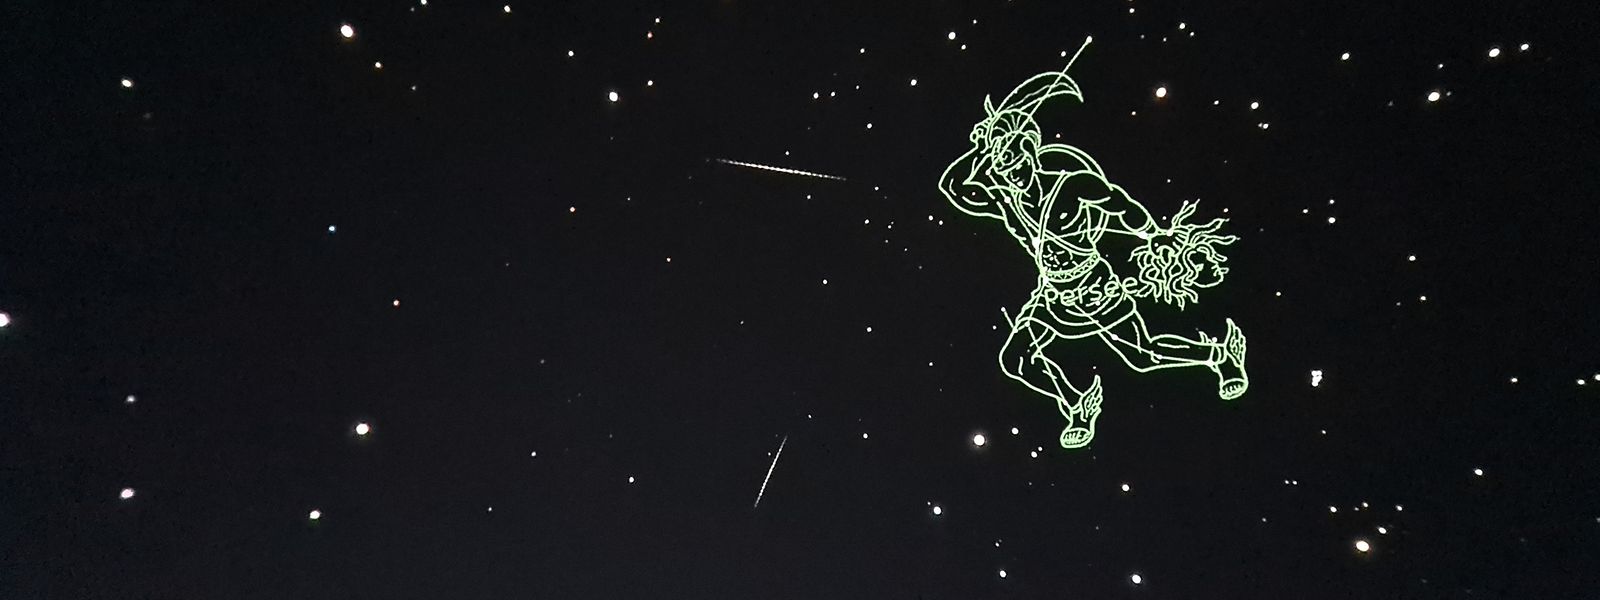 Au planétarium du Science Center, la constellation de Persée est visible toute la journée. 